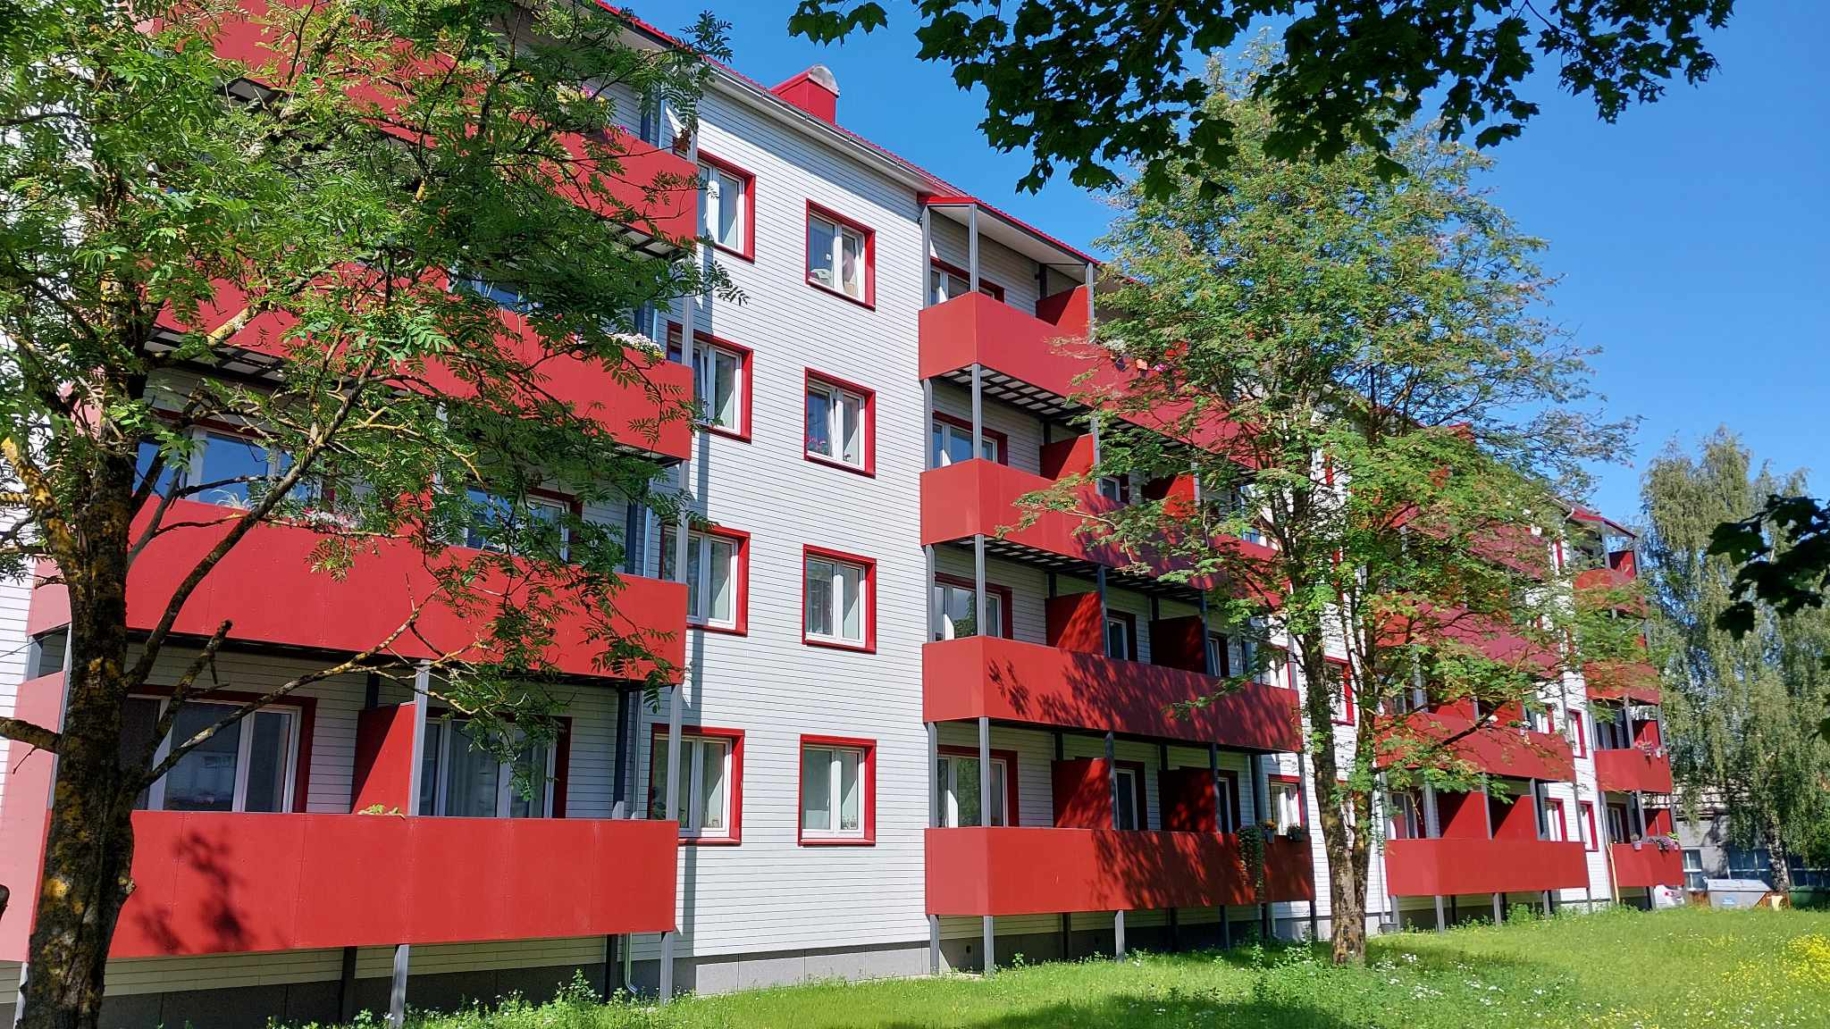 Kinnisvarabüroo Uus Maa analüütiku Risto Vähi sõnul renoveeritakse vanu Tallinna «mägede» kortermaju juba sellisel tasemel, et need on nii välimuselt kui...